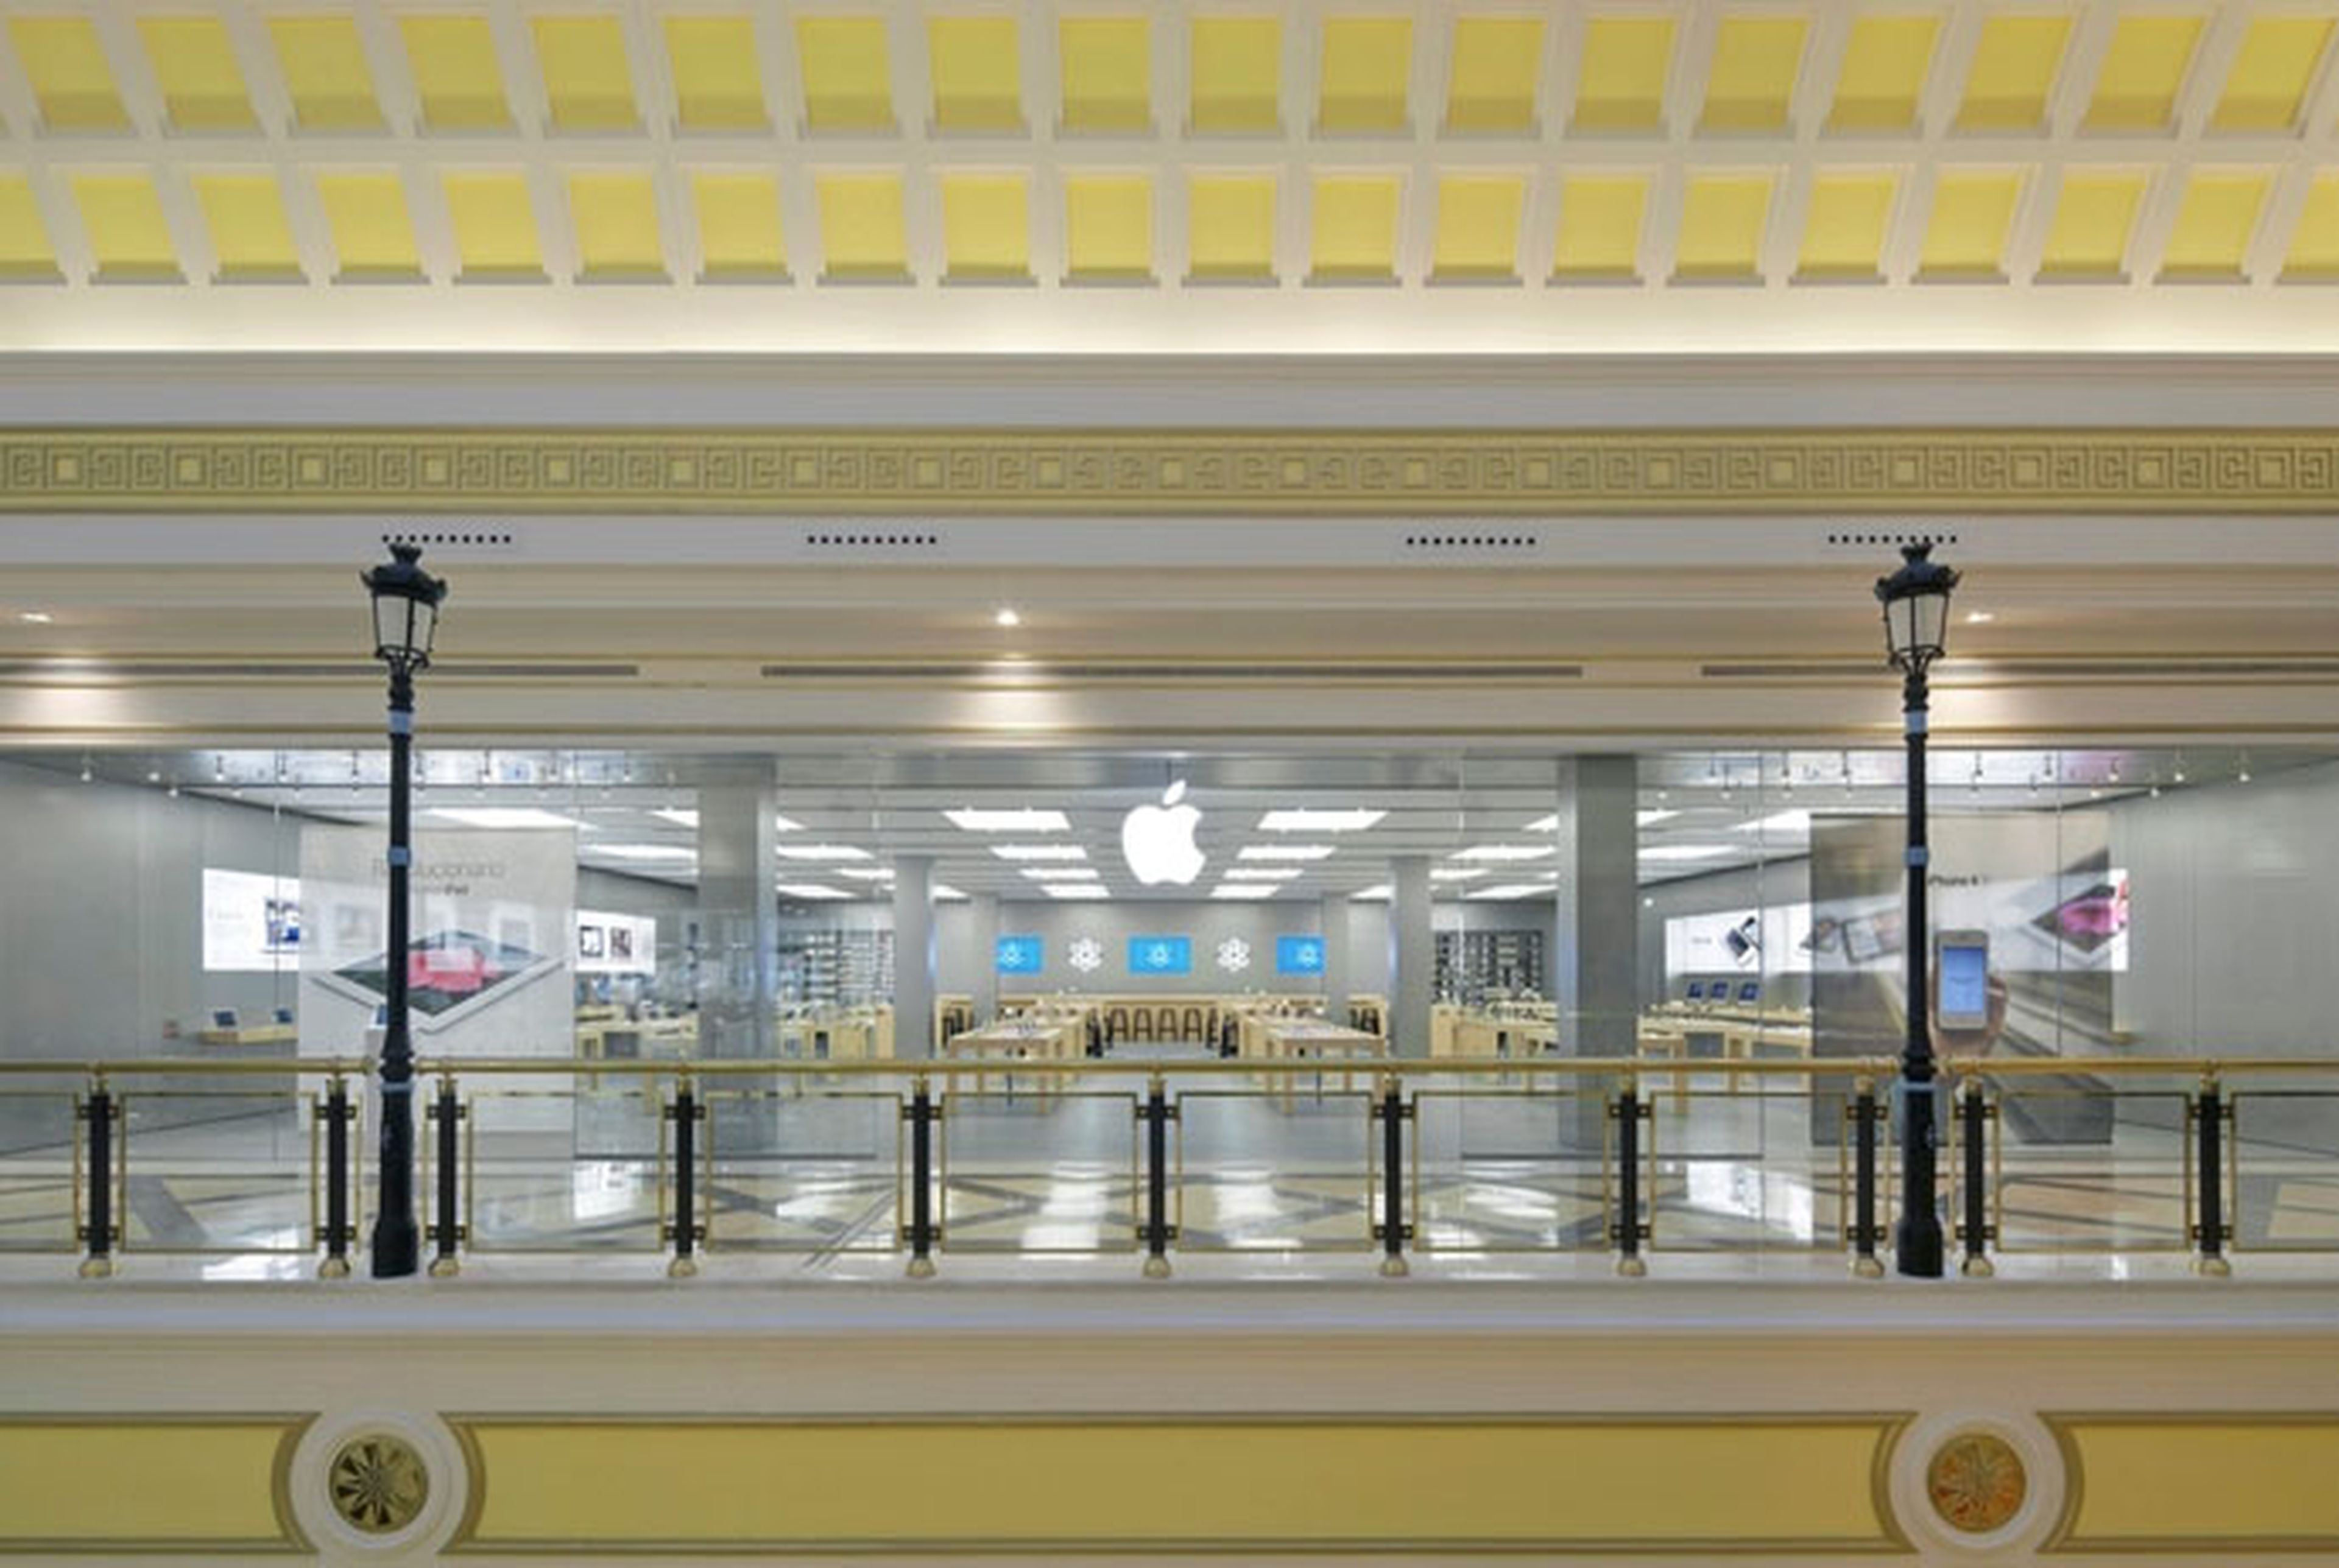 Apple Store en el Centro Comercial Gran Plaza 2 en Majadahonda (Madrid)